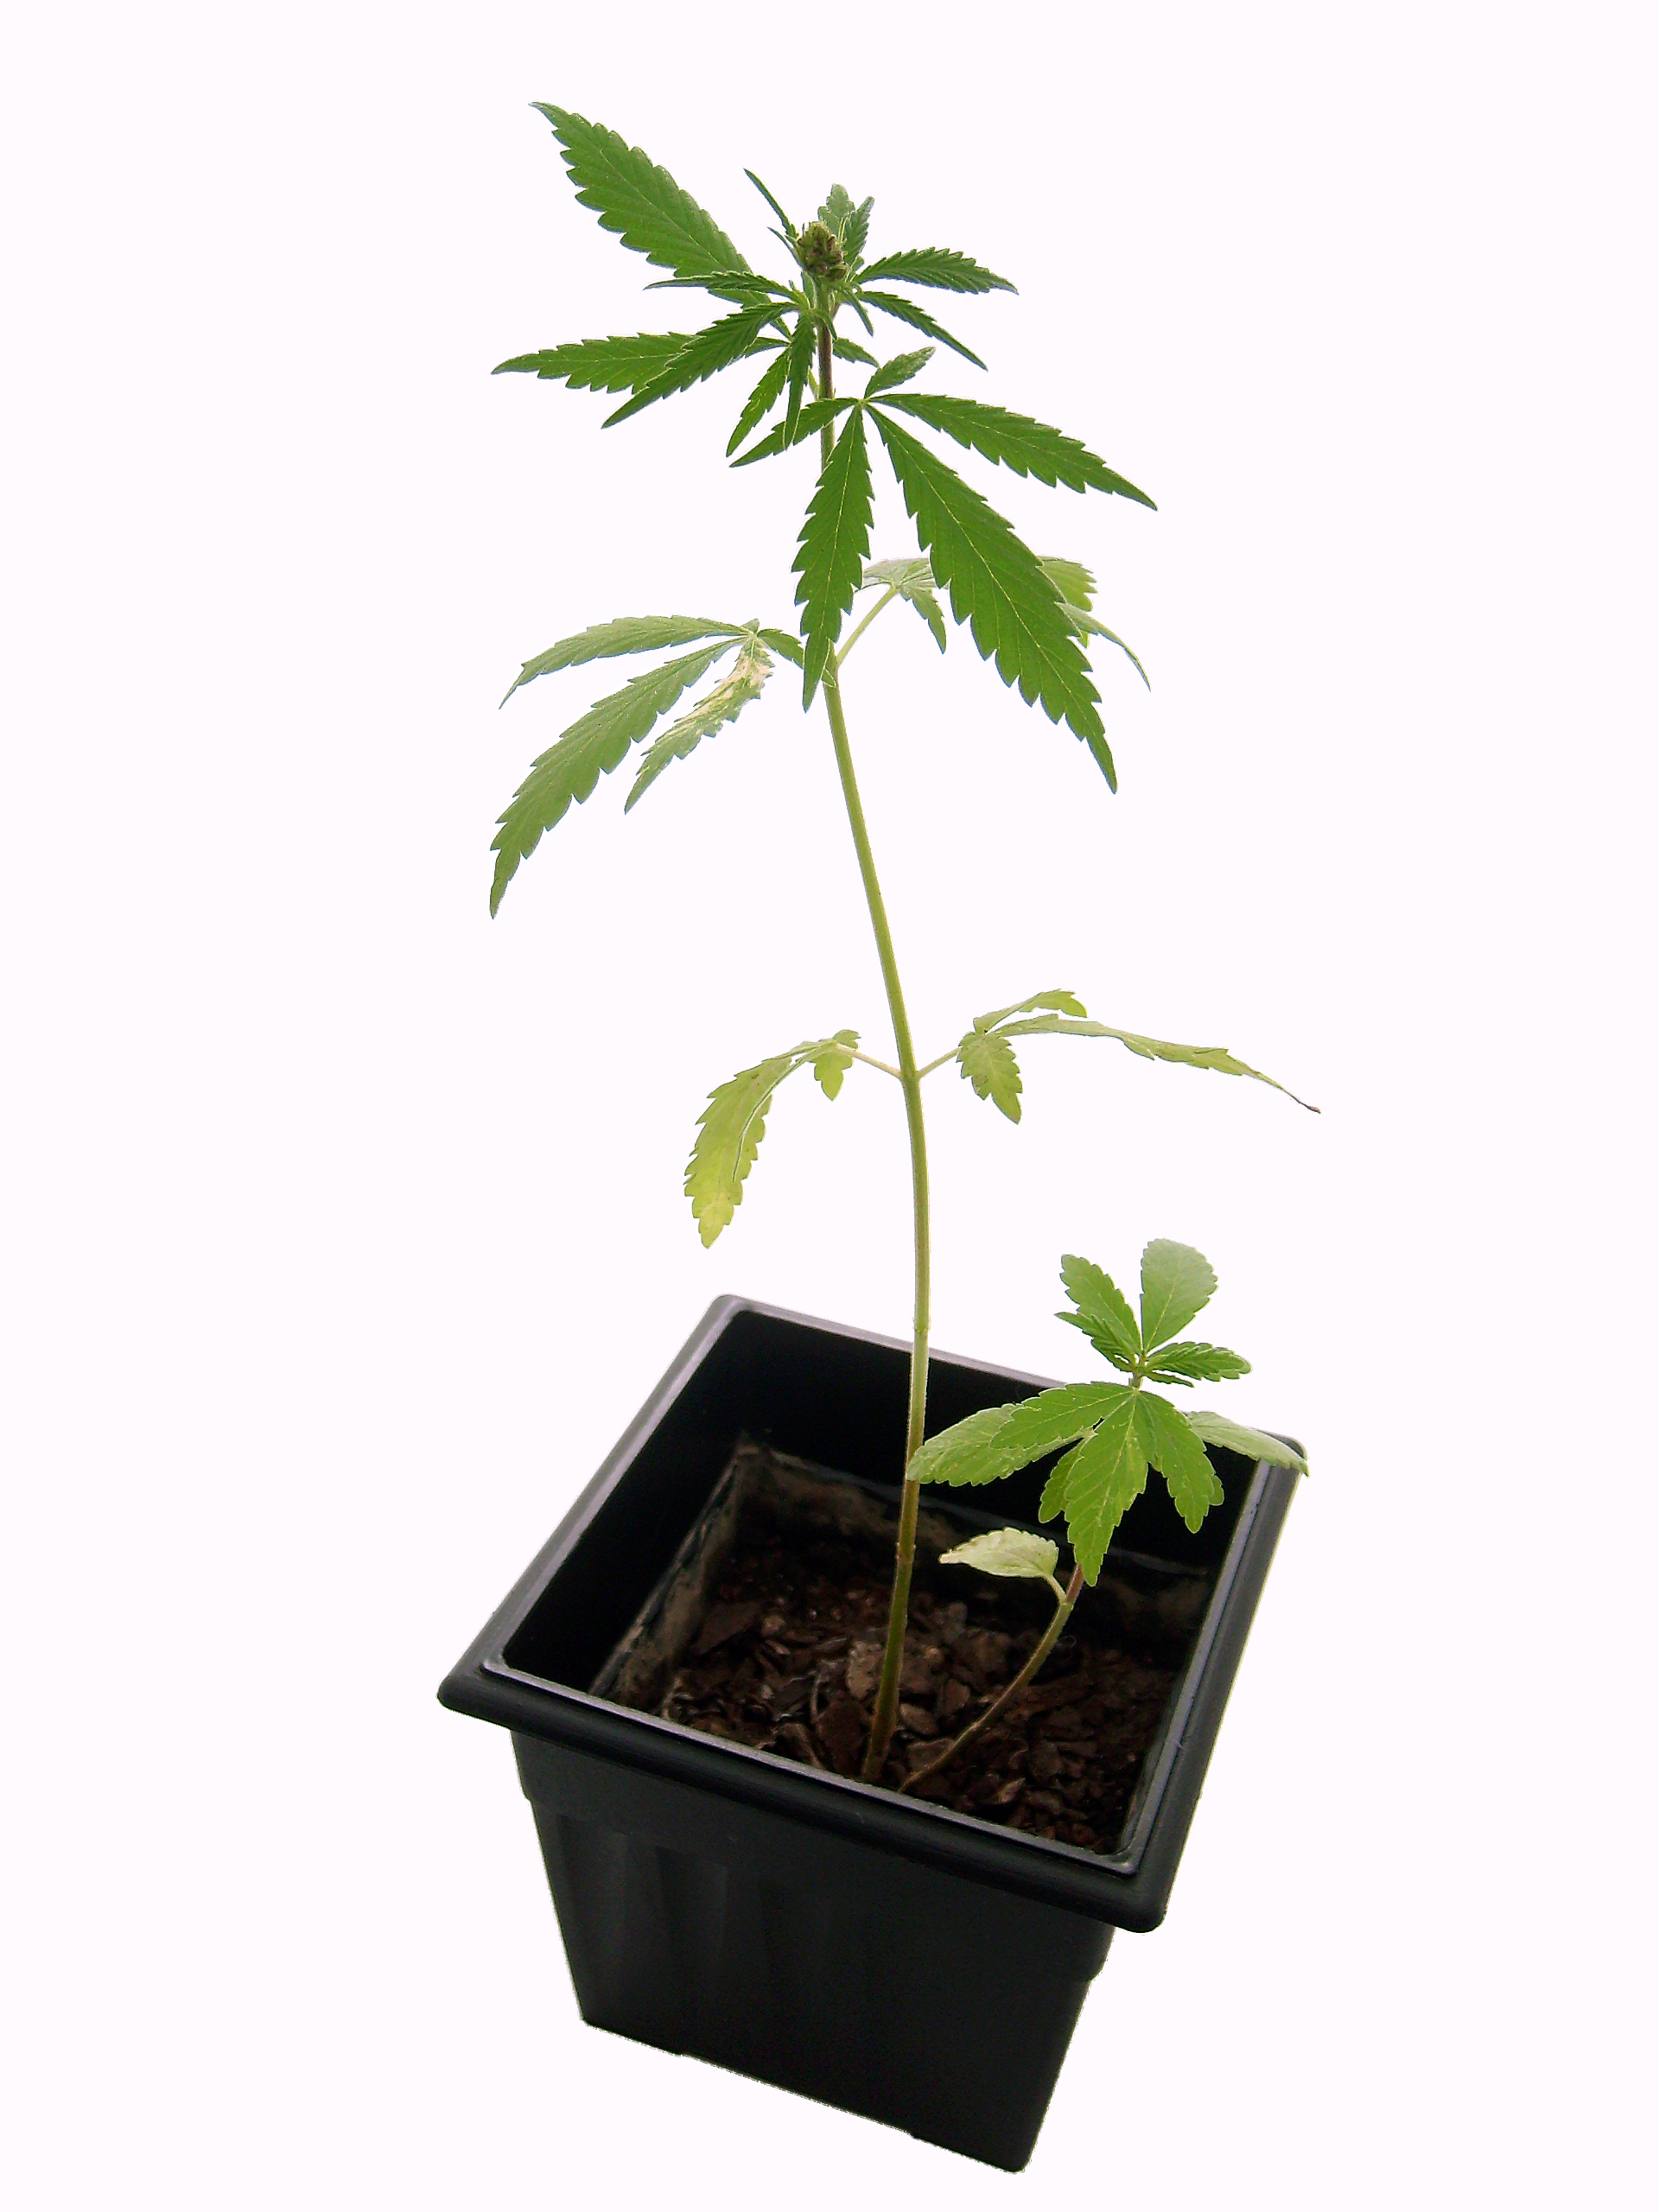 Bundesverwaltungsgericht treibt Cannabis als Medizin voran